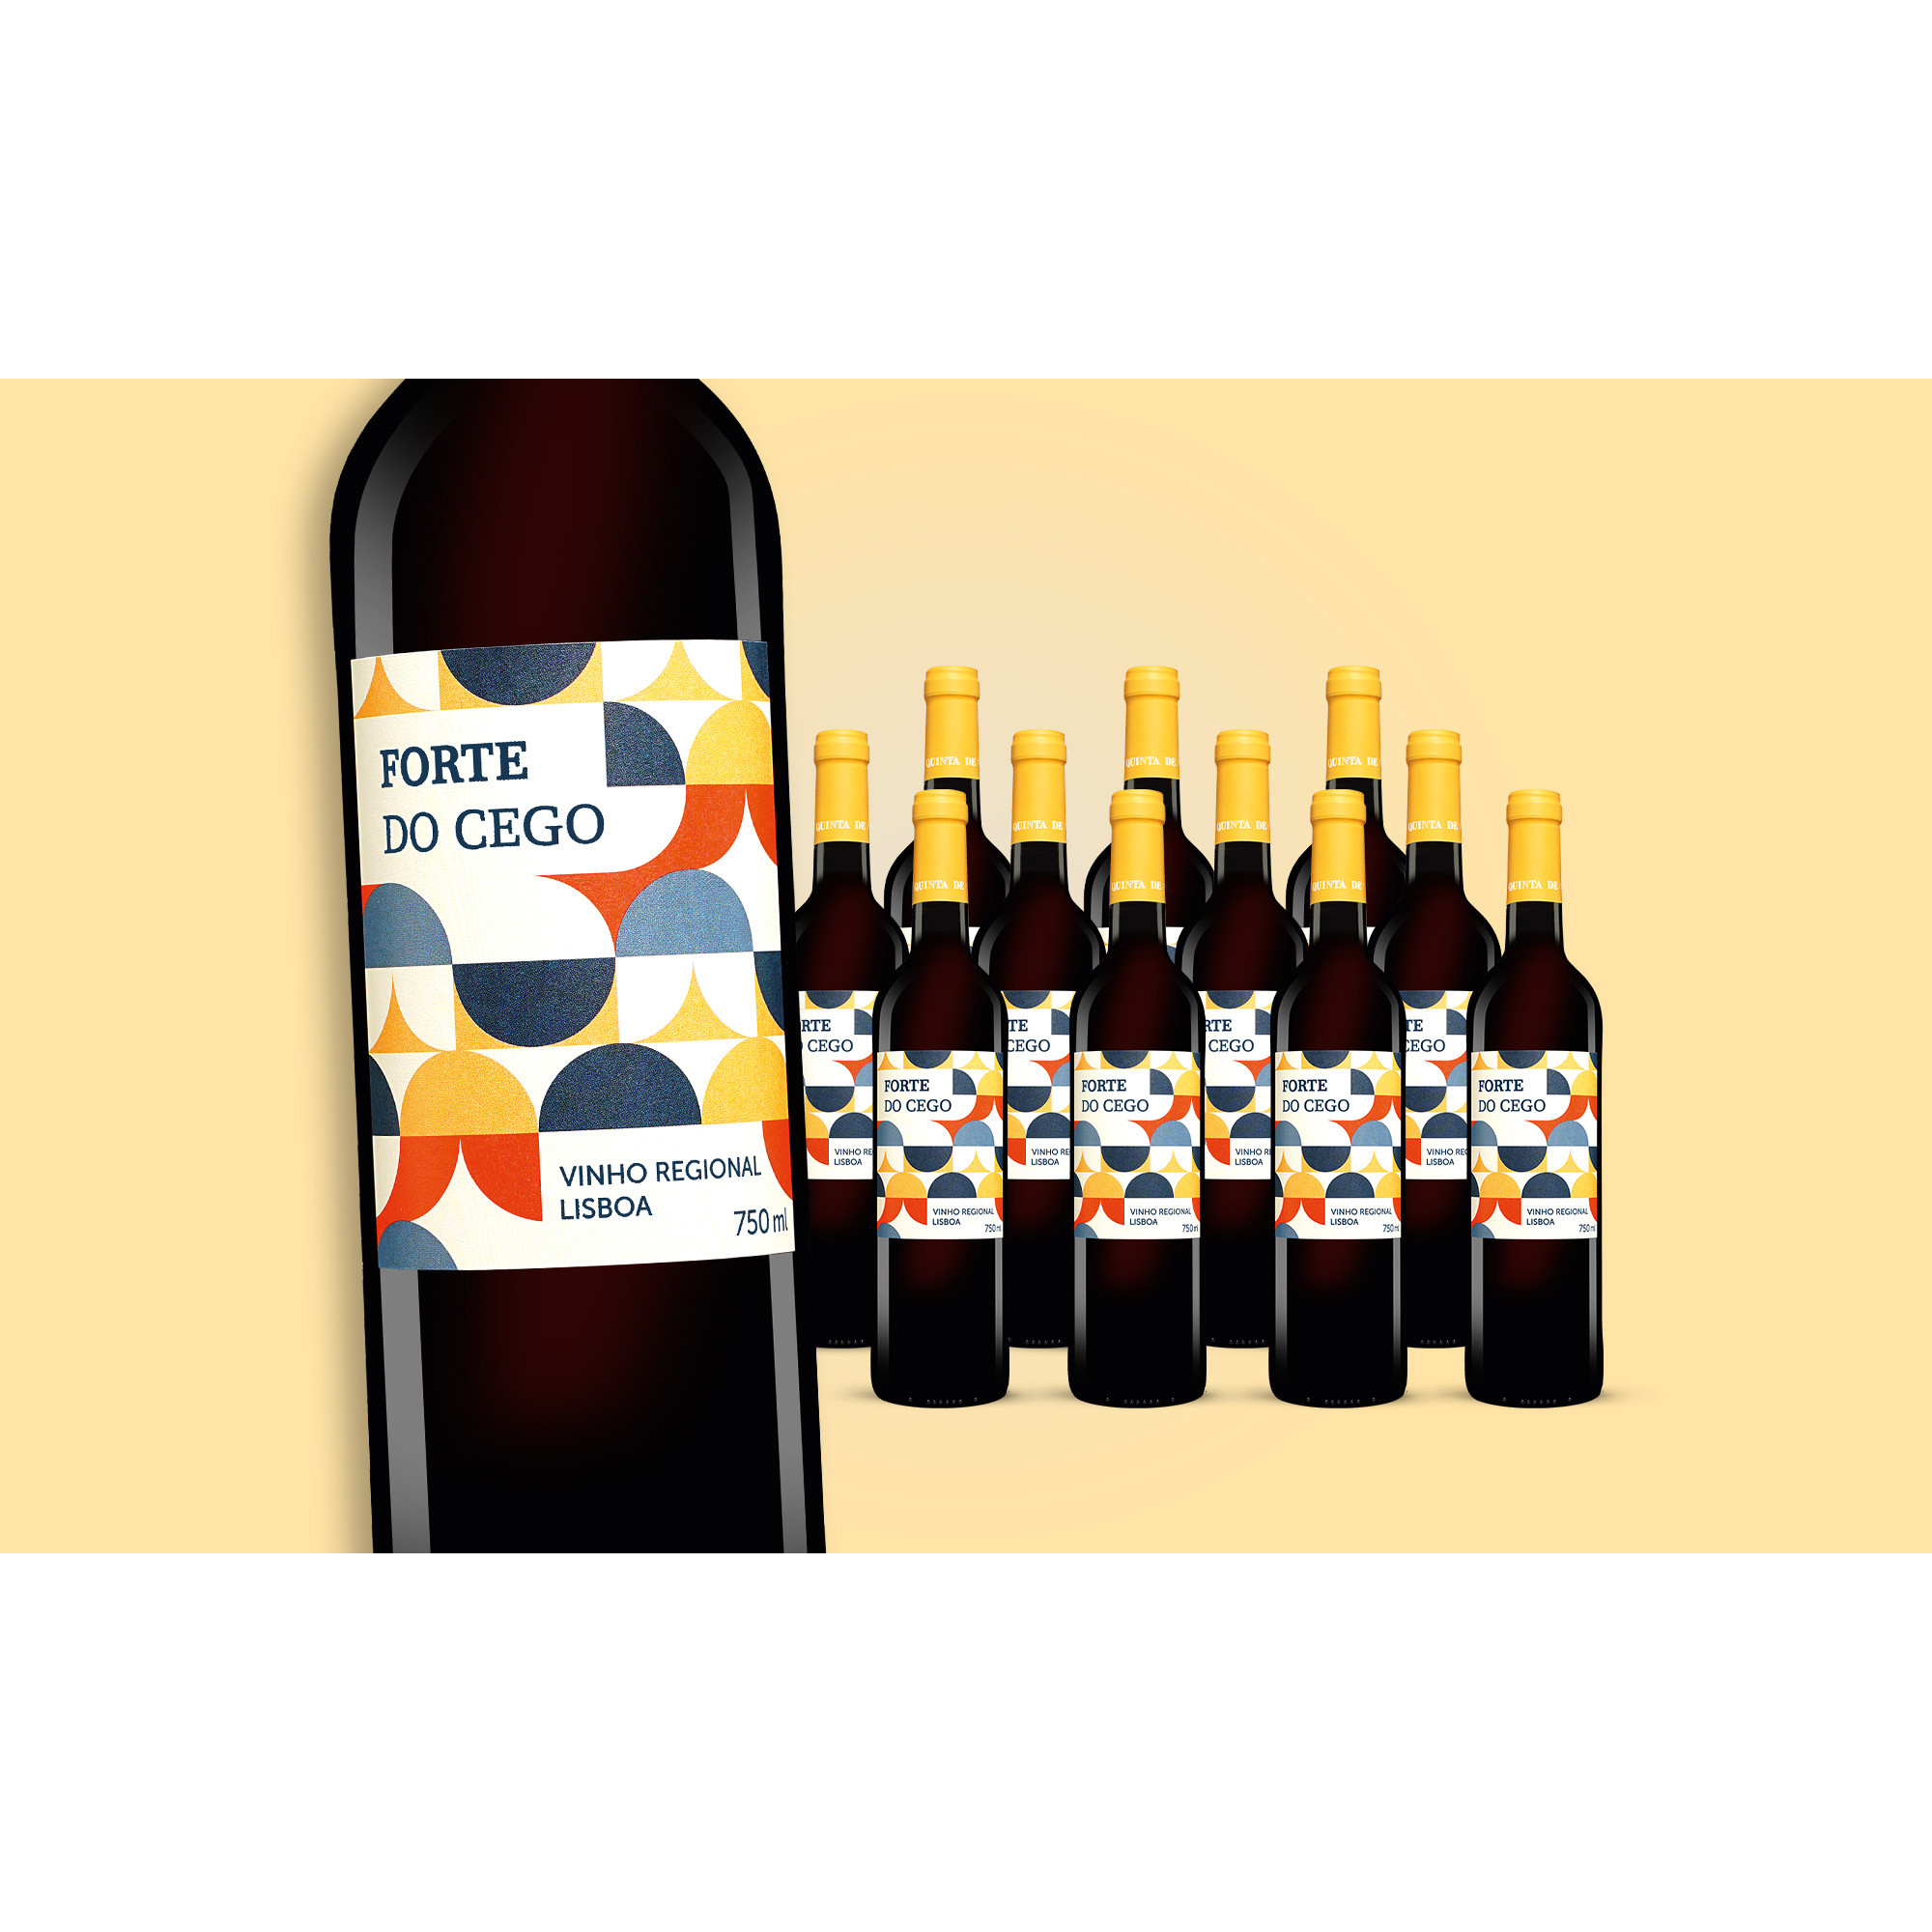 Forte do Cego 2020  9L Trocken Weinpaket aus Spanien 34969 vinos DE